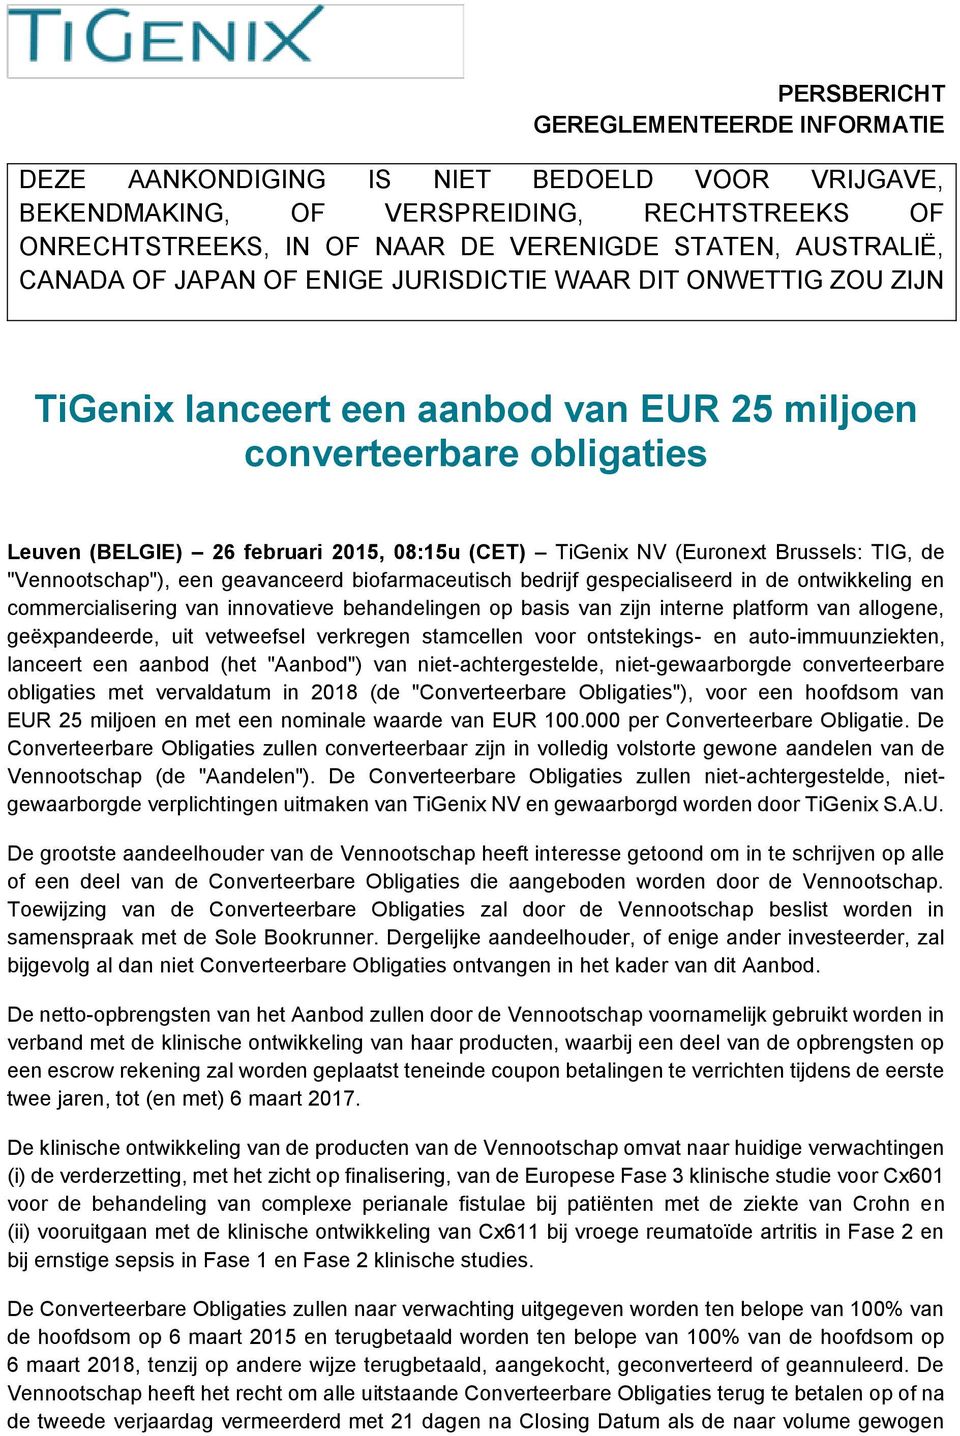 (Euronext Brussels: TIG, de "Vennootschap"), een geavanceerd biofarmaceutisch bedrijf gespecialiseerd in de ontwikkeling en commercialisering van innovatieve behandelingen op basis van zijn interne